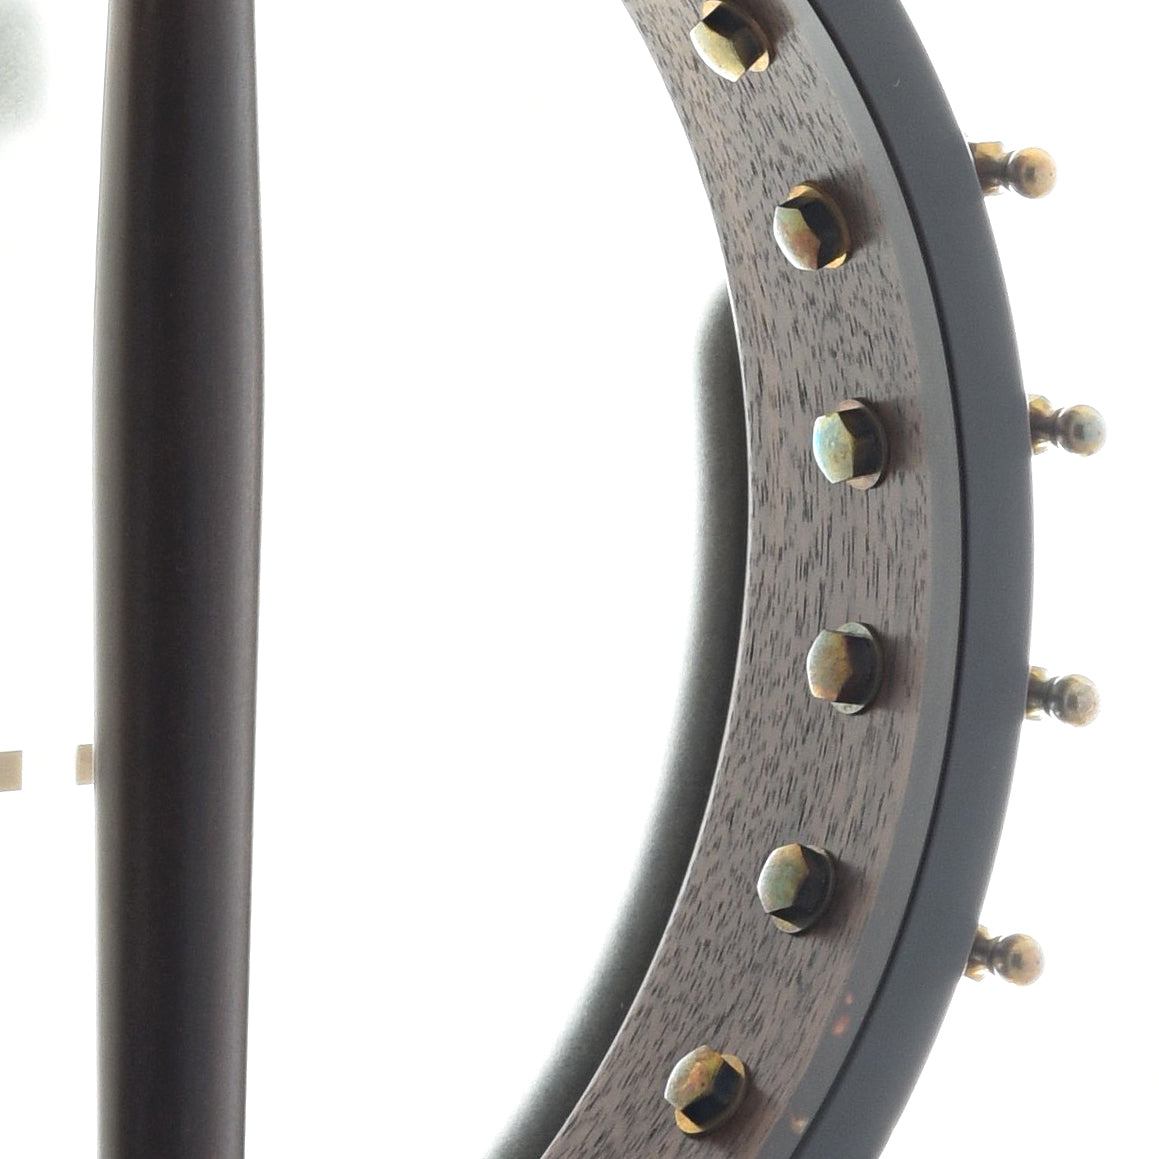 Image 11 of Ome Mira 11" Openback Banjo & Case, Walnut Neck, Radiused Fretboard - SKU# MIRA-WAL11 : Product Type Open Back Banjos : Elderly Instruments